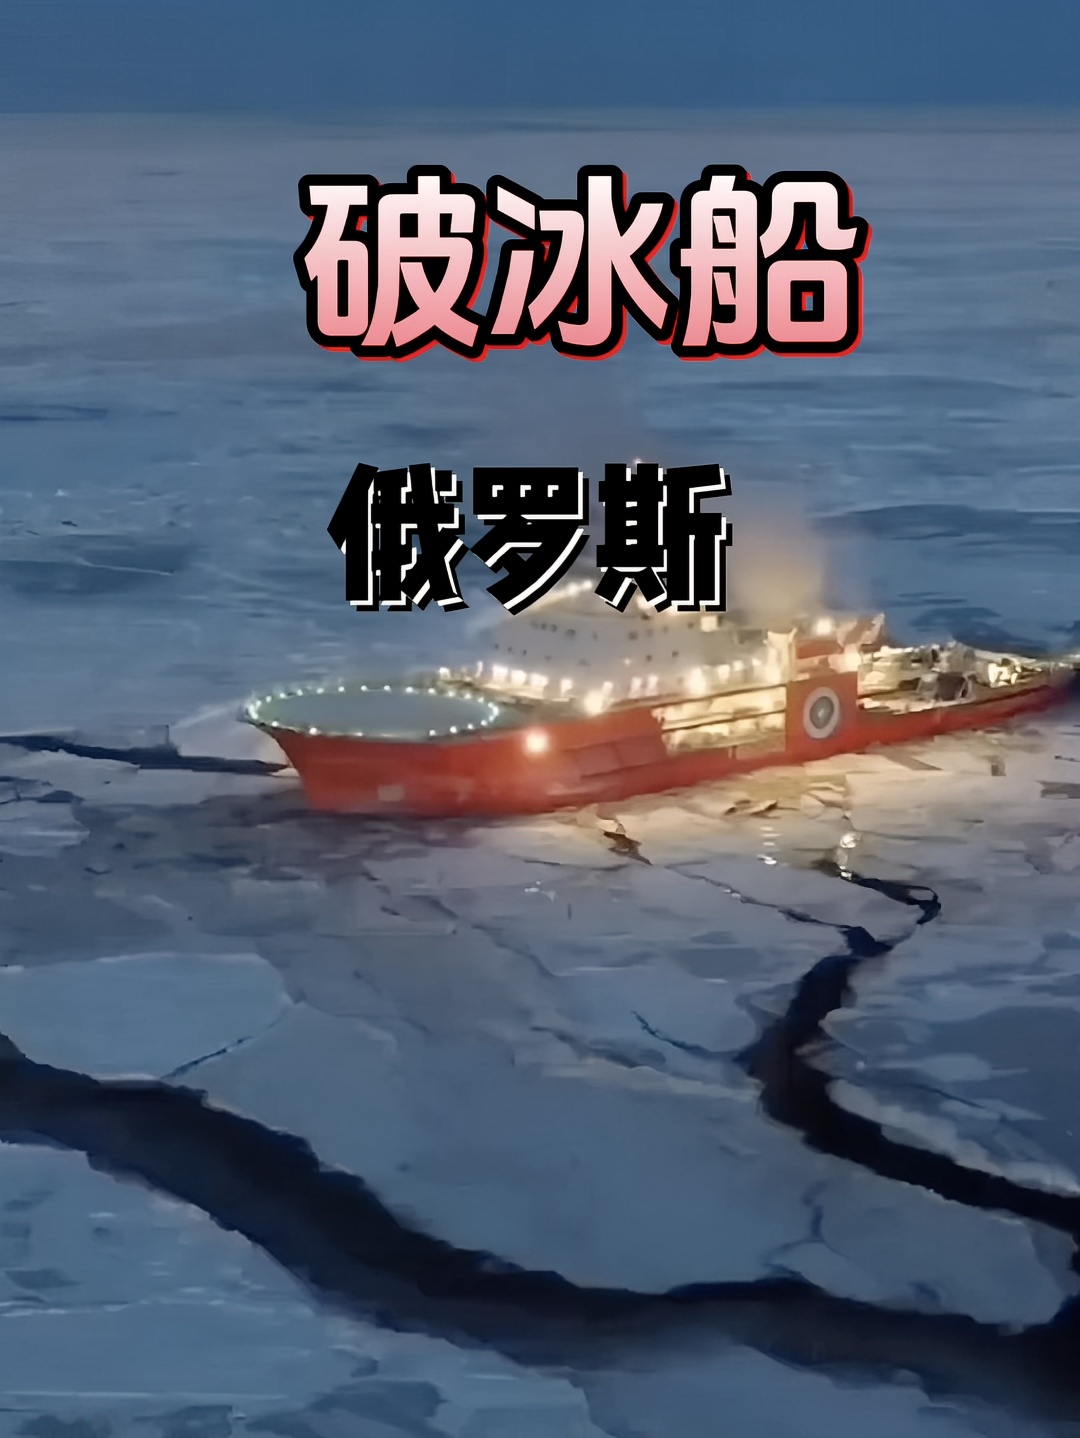 俄罗斯破冰船 真的不可思议